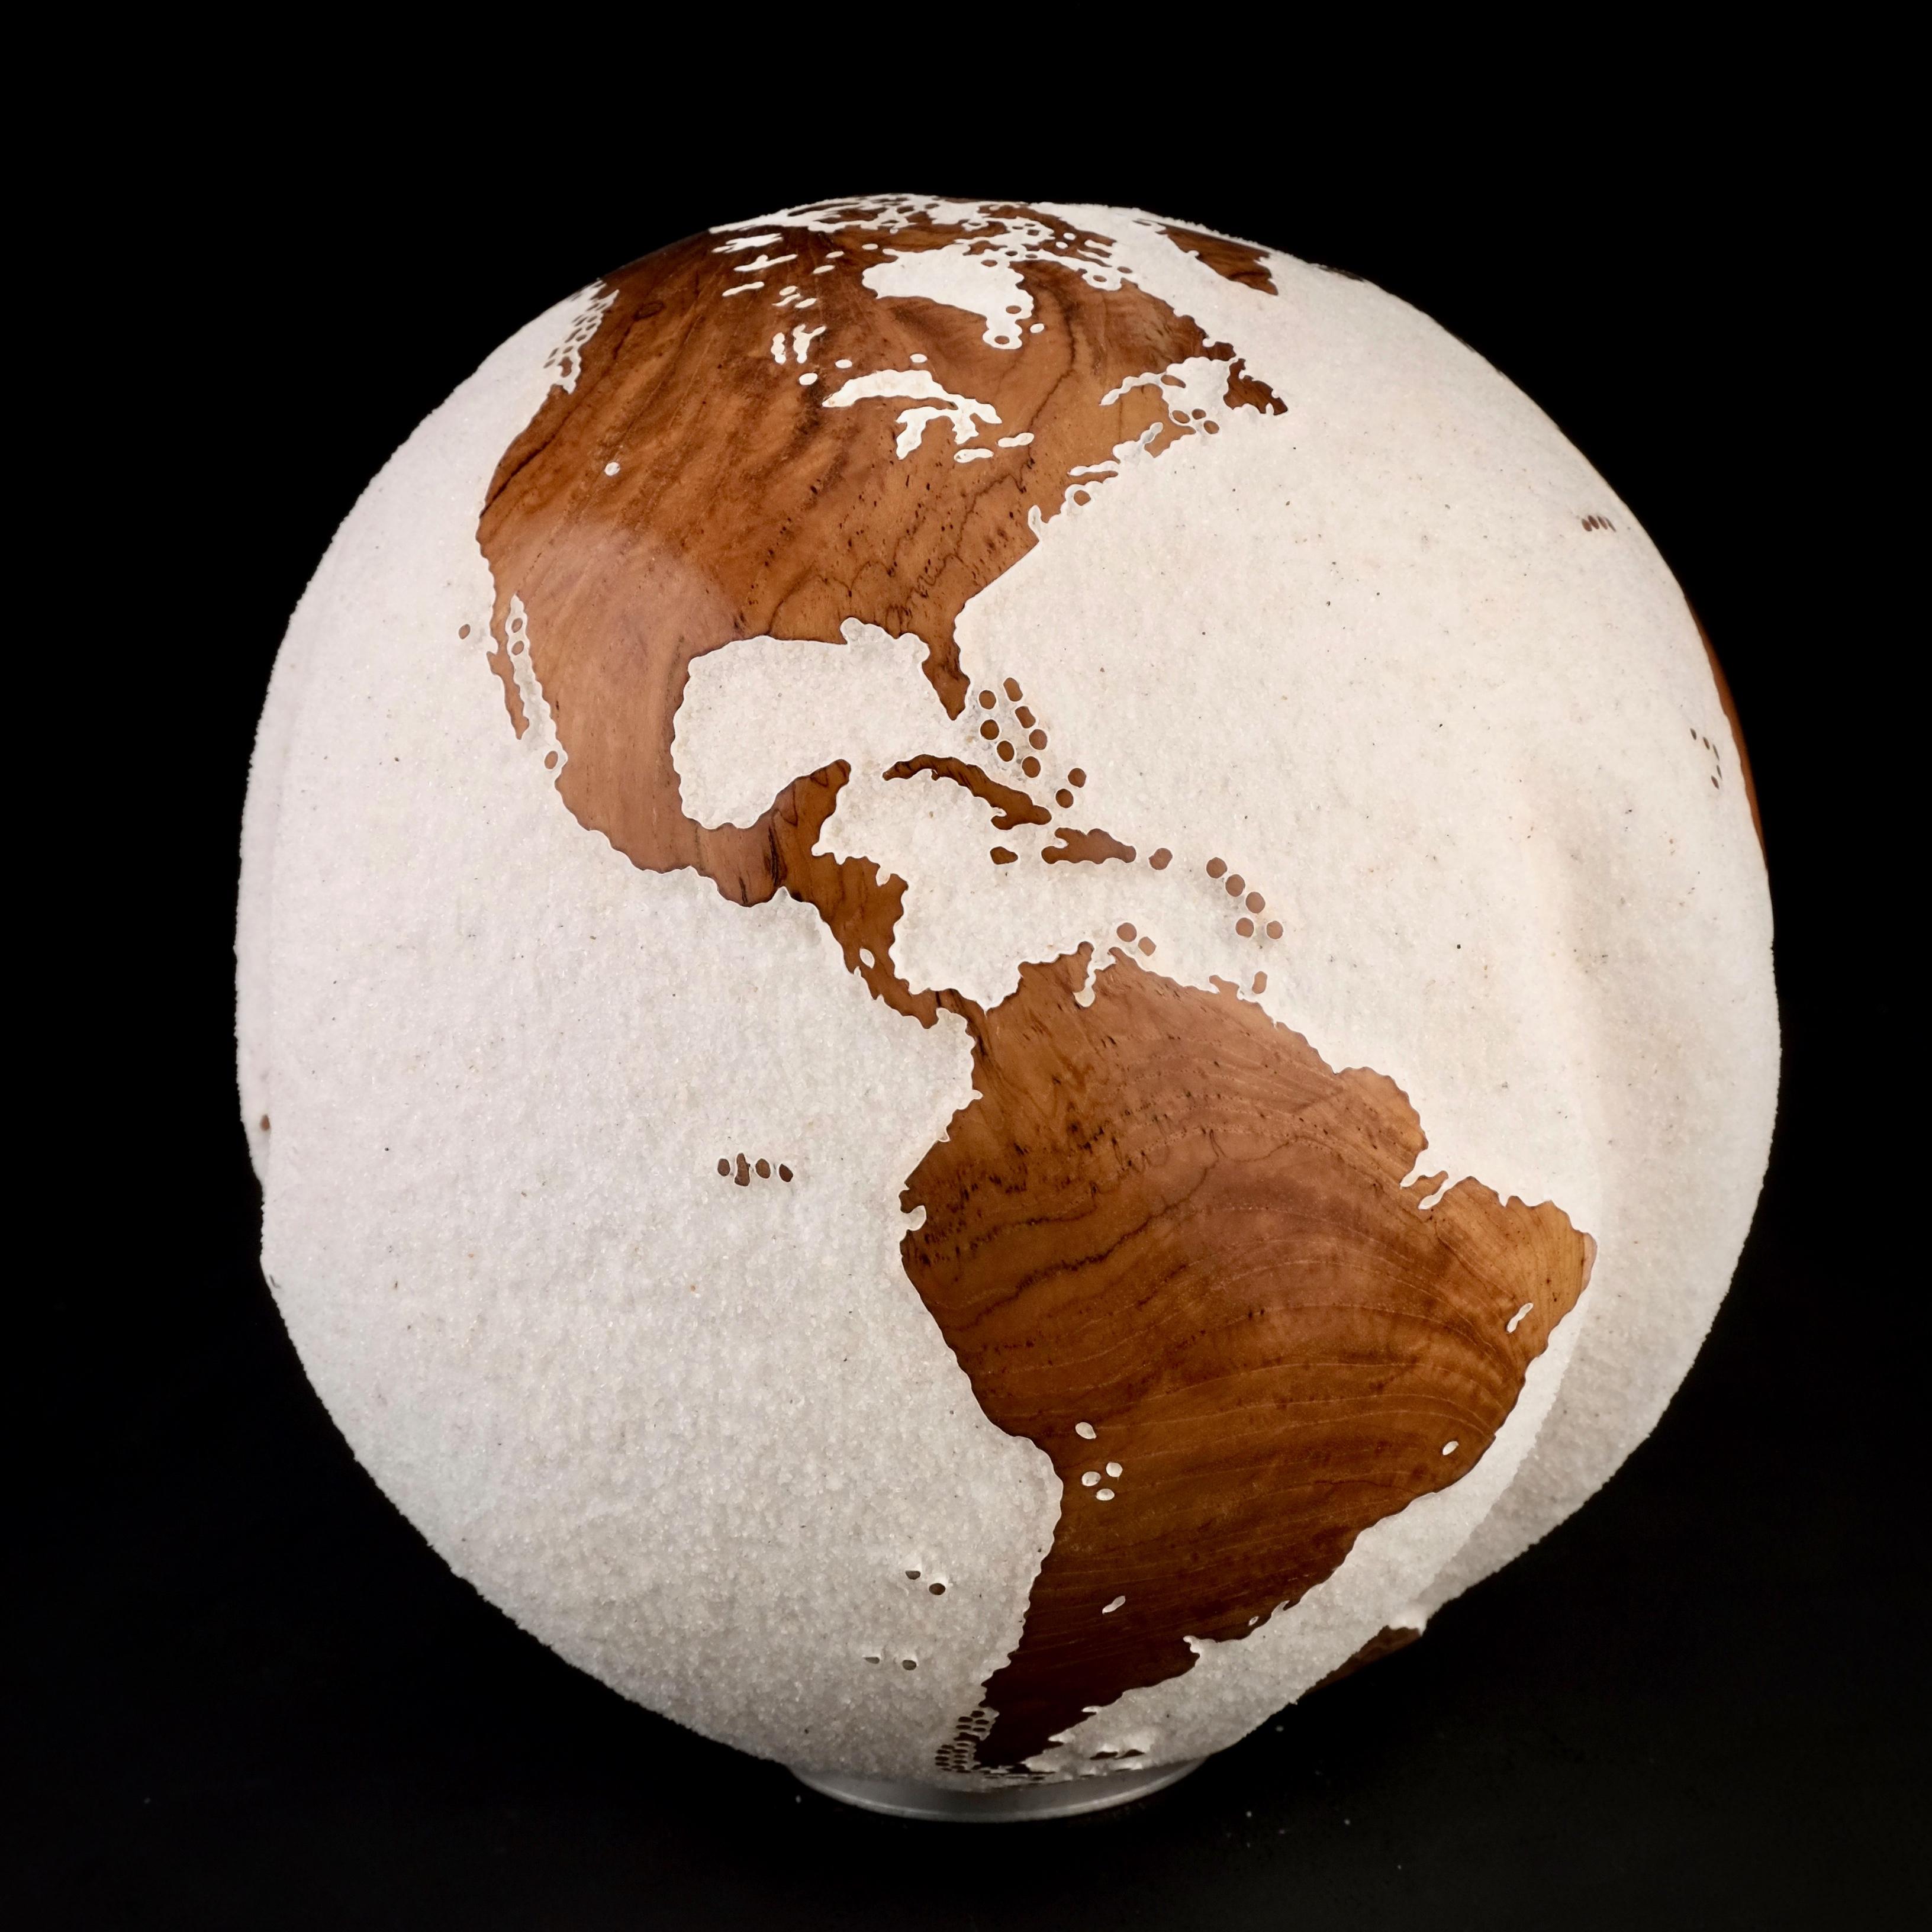 Le bois de teck et le sable de lave blanc font de ce magnifique globe tournant une véritable sculpture étonnante.
Réalisée à partir d'un morceau de bois entier, la sculpture est façonnée en fonction de la croissance de l'arbre.
Posée sur un socle